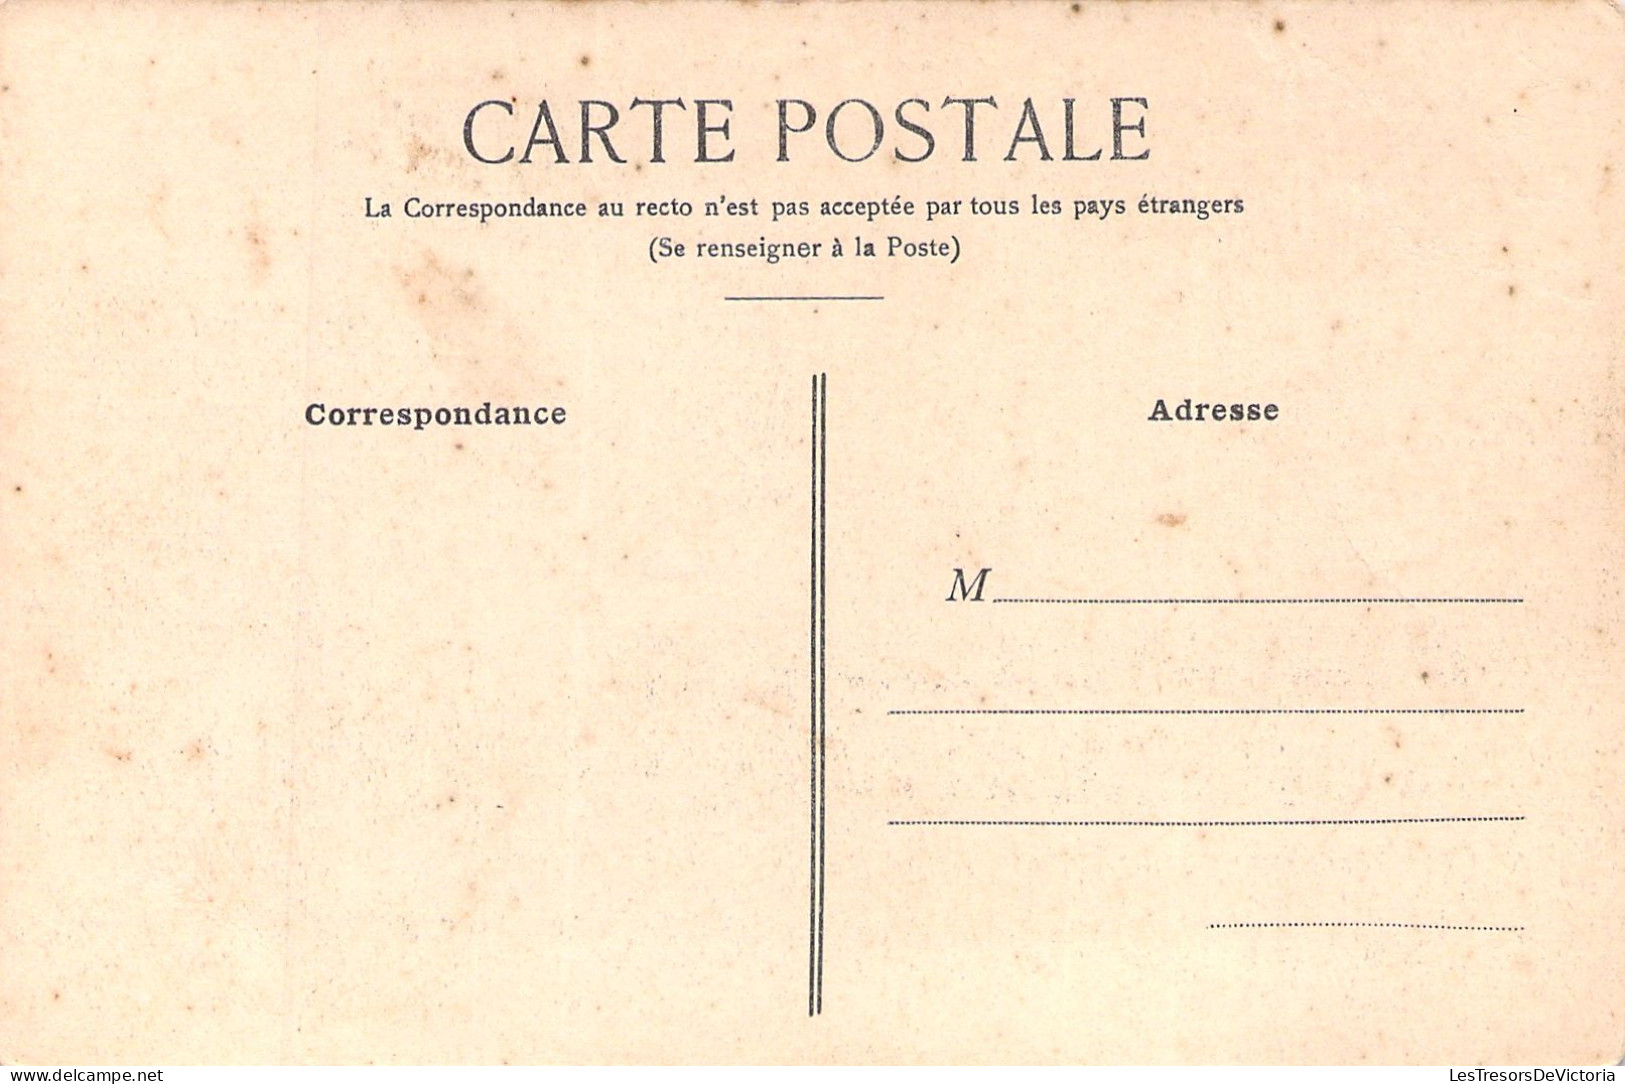 NOUVELLE CALEDONIE - NOUMEA - Hopital Militaire - Carte Postale Ancienne - Nouvelle-Calédonie